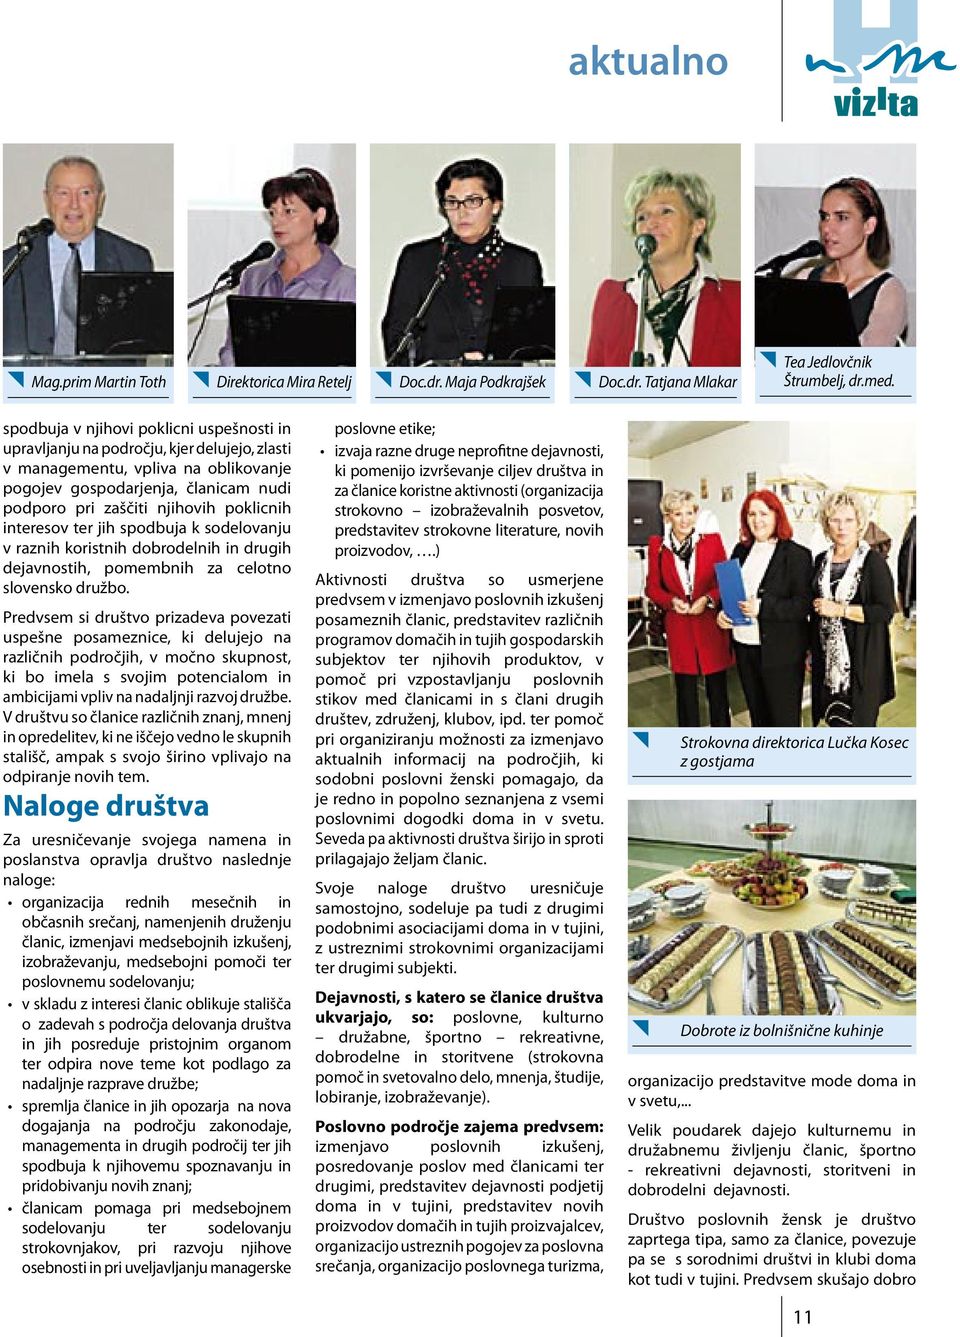 poklicnih interesov ter jih spodbuja k sodelovanju v raznih koristnih dobrodelnih in drugih dejavnostih, pomembnih za celotno slovensko družbo.